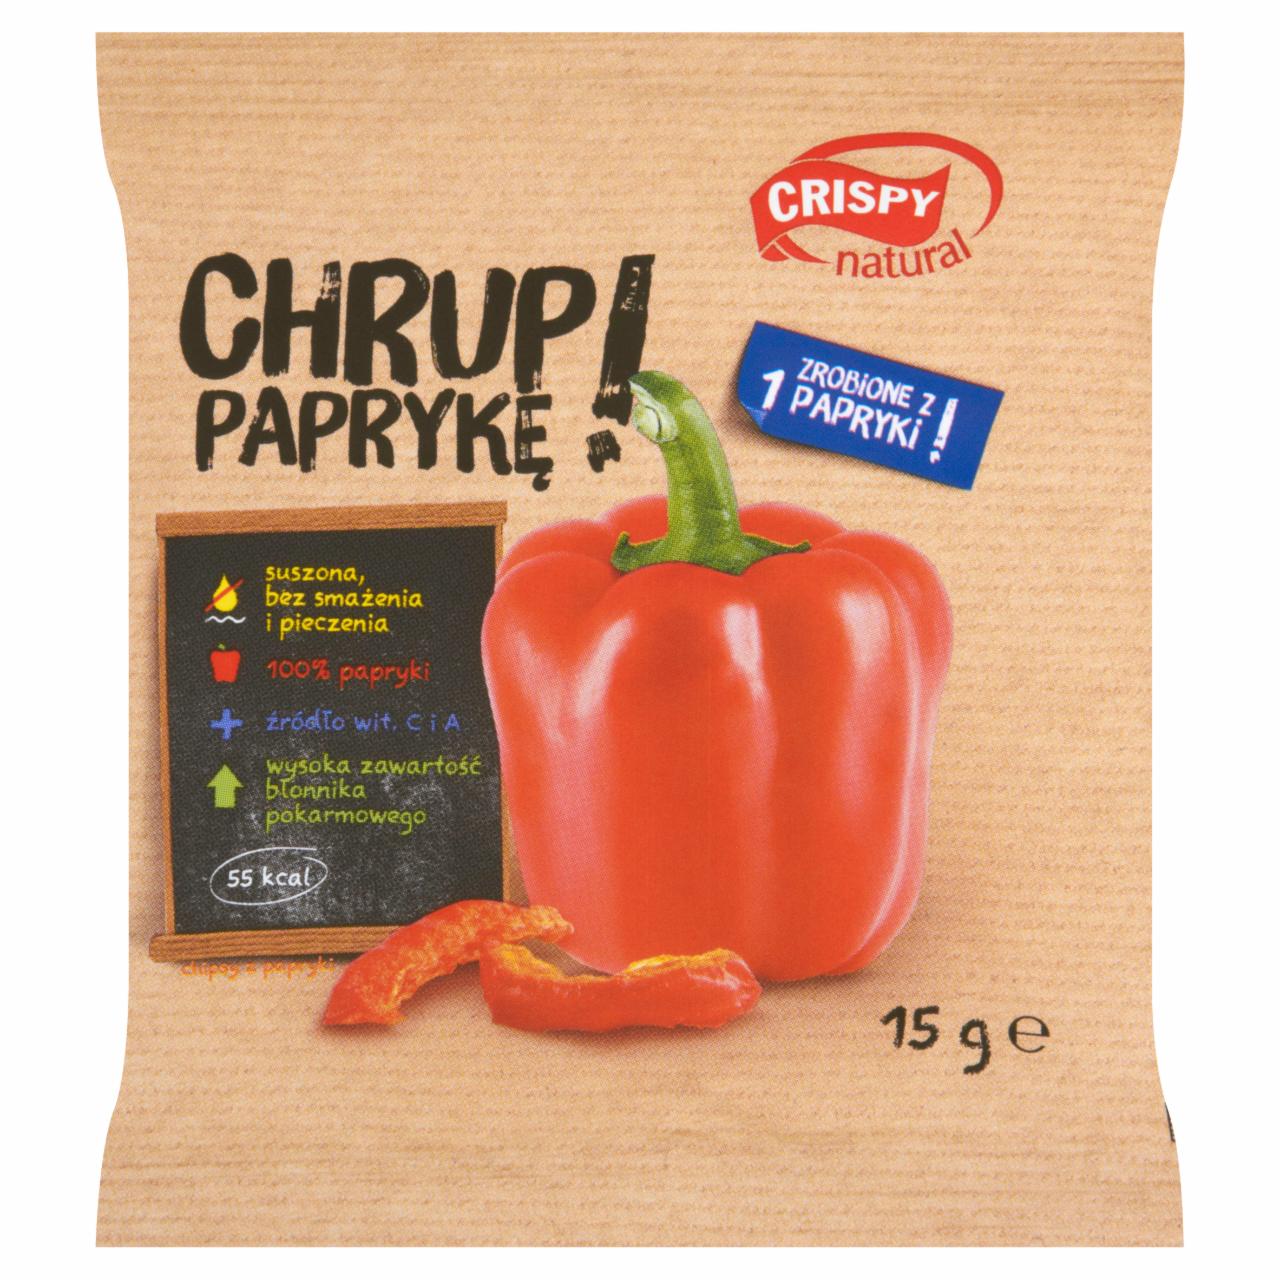 Zdjęcia - Crispy Natural Chrup Paprykę! Chipsy 15 g